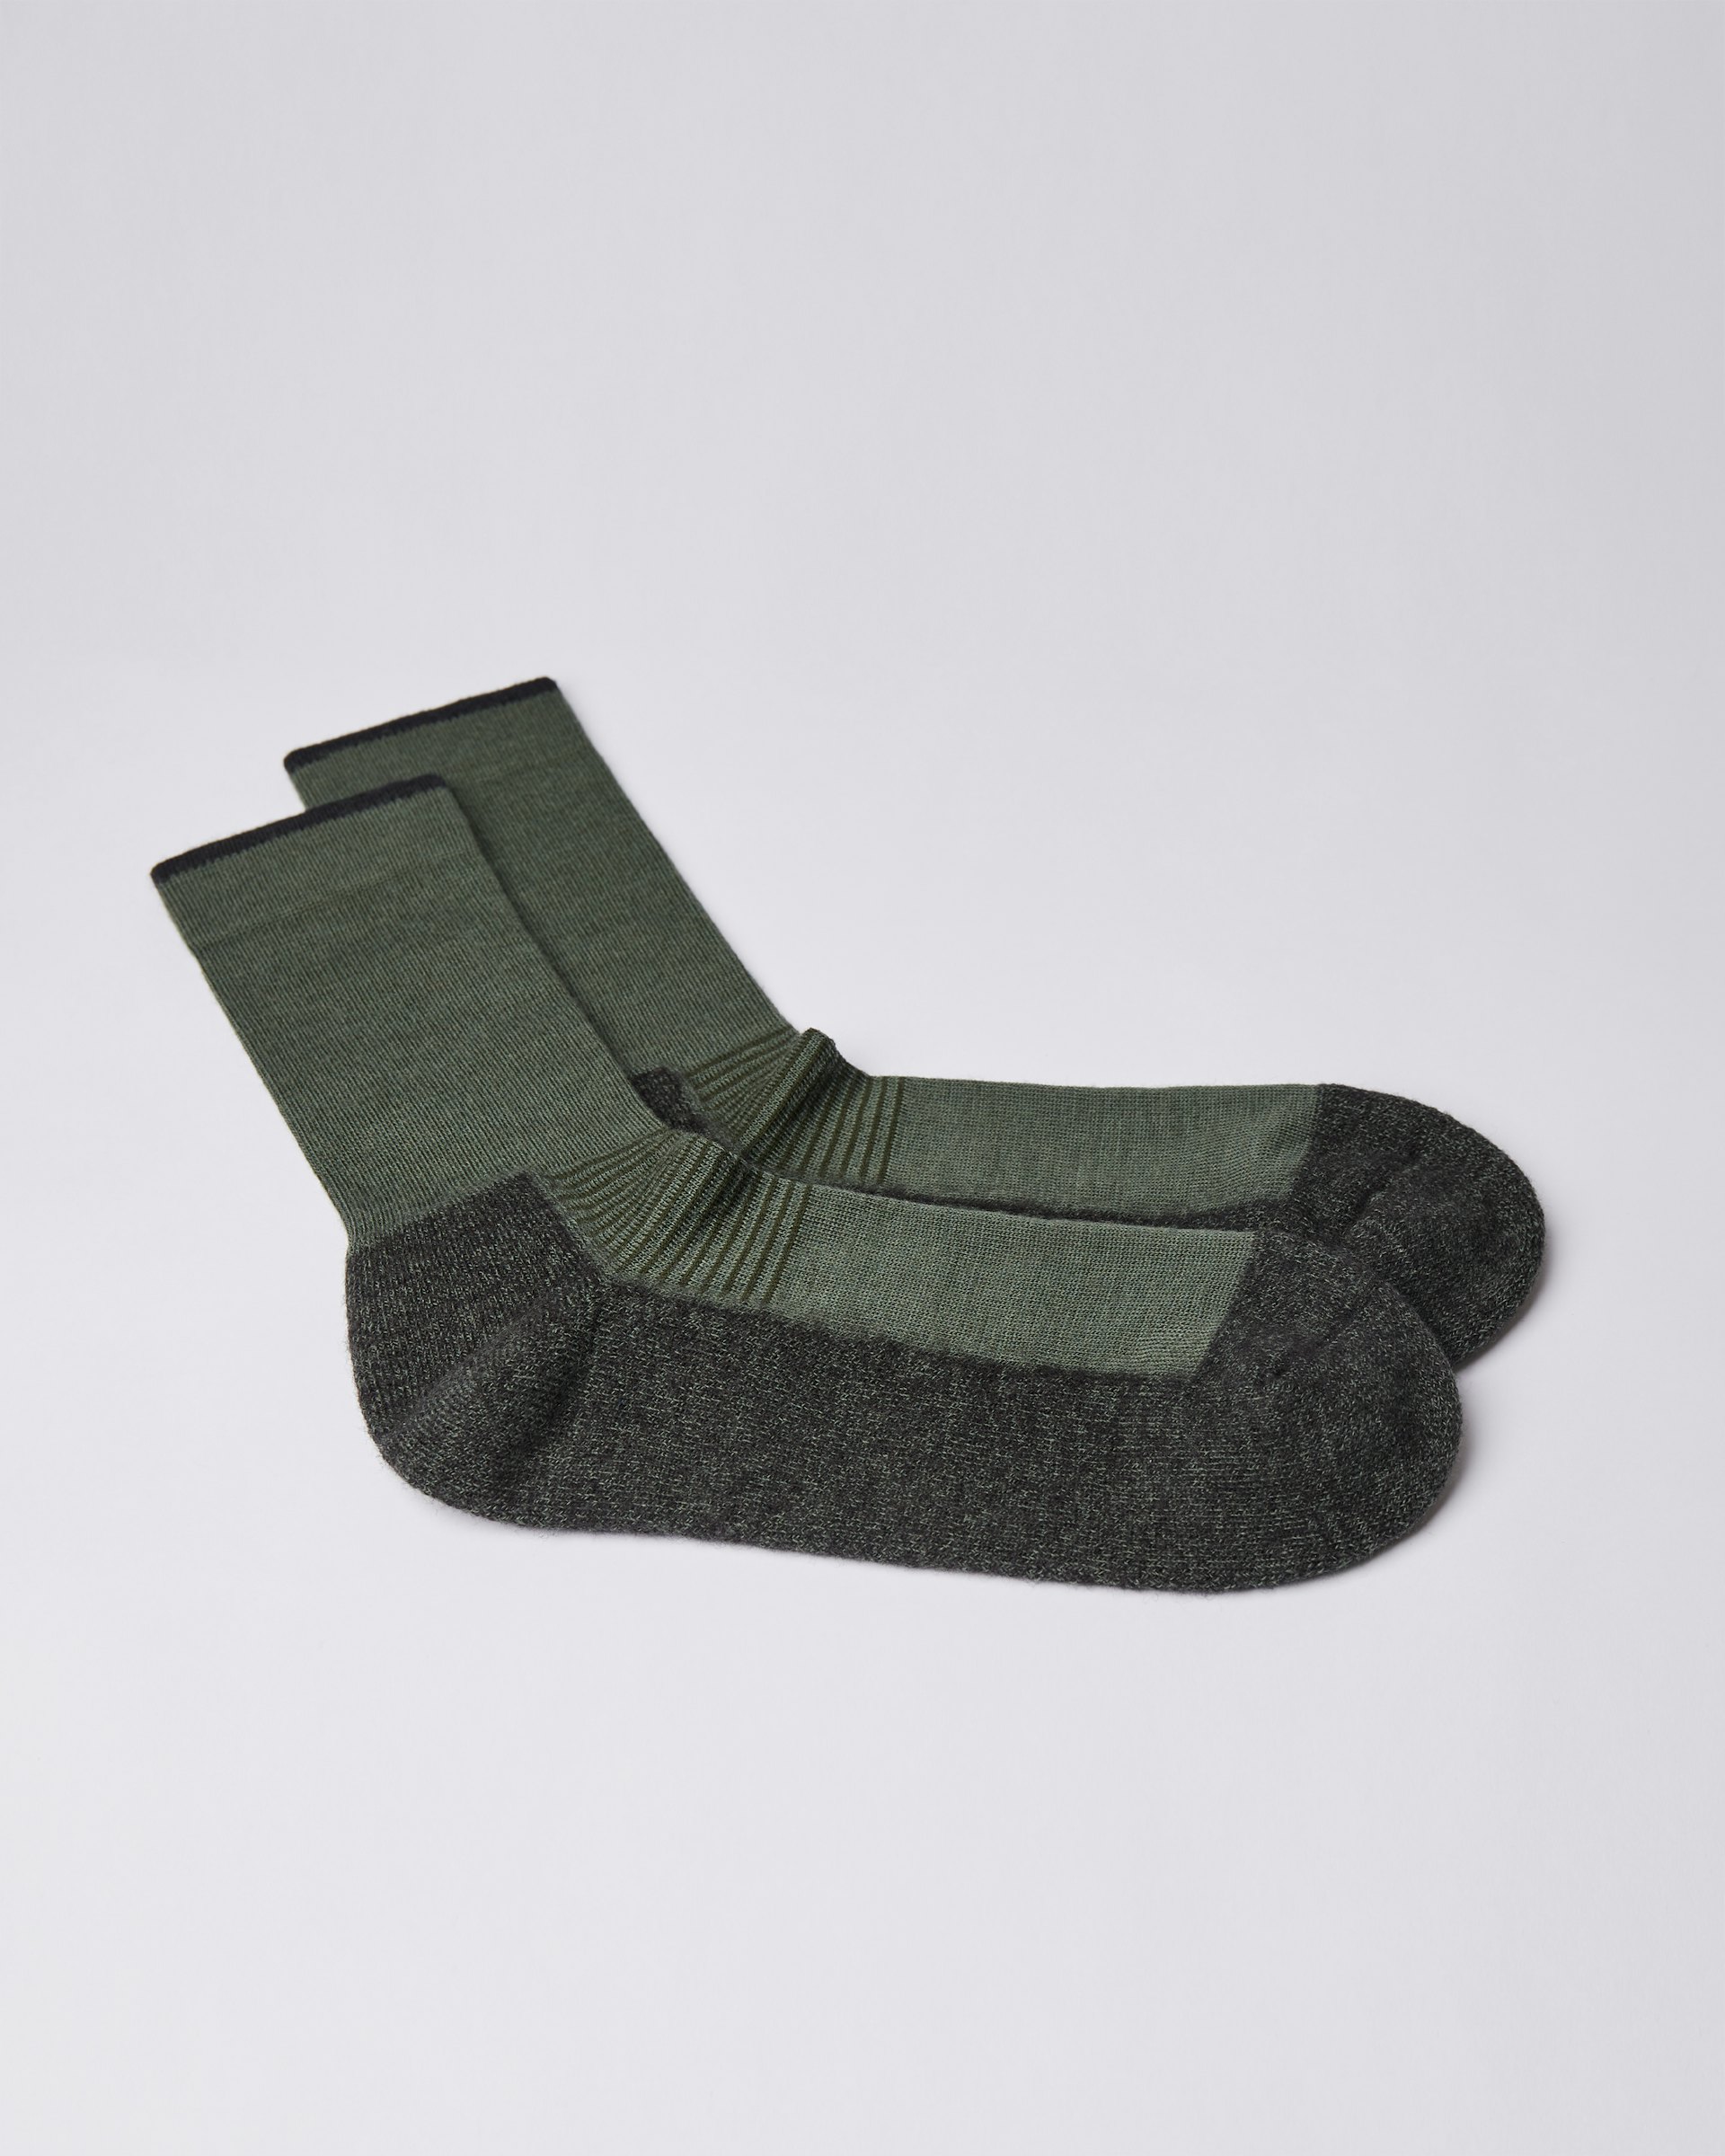 Wool Sock gehört zur kategorie Artikel und ist farbig green & green (3 oder 3)